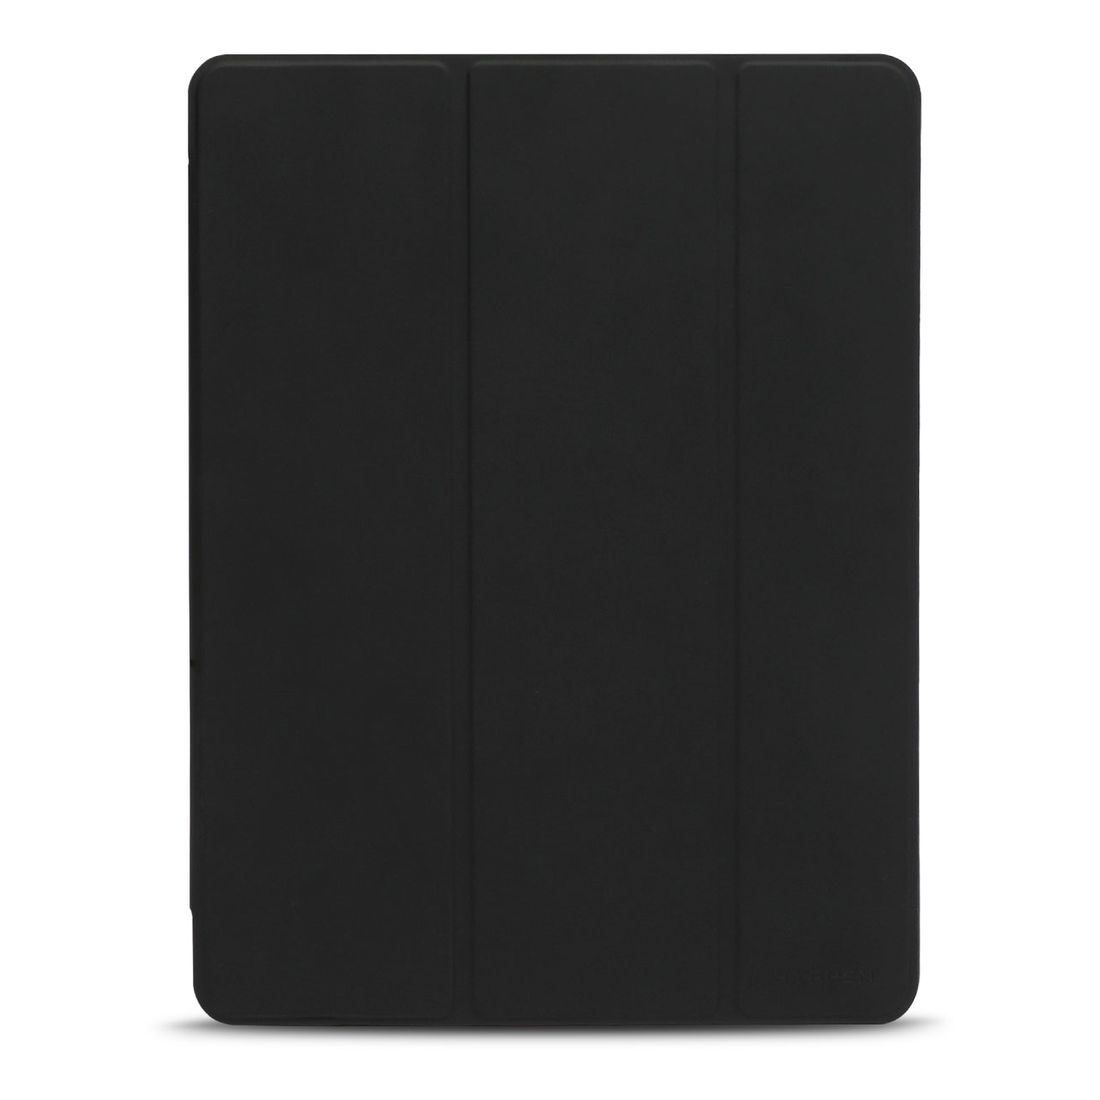 HYPHEN VEGA EOS Slim Folio Case for iPad 10.2-Inch - Black